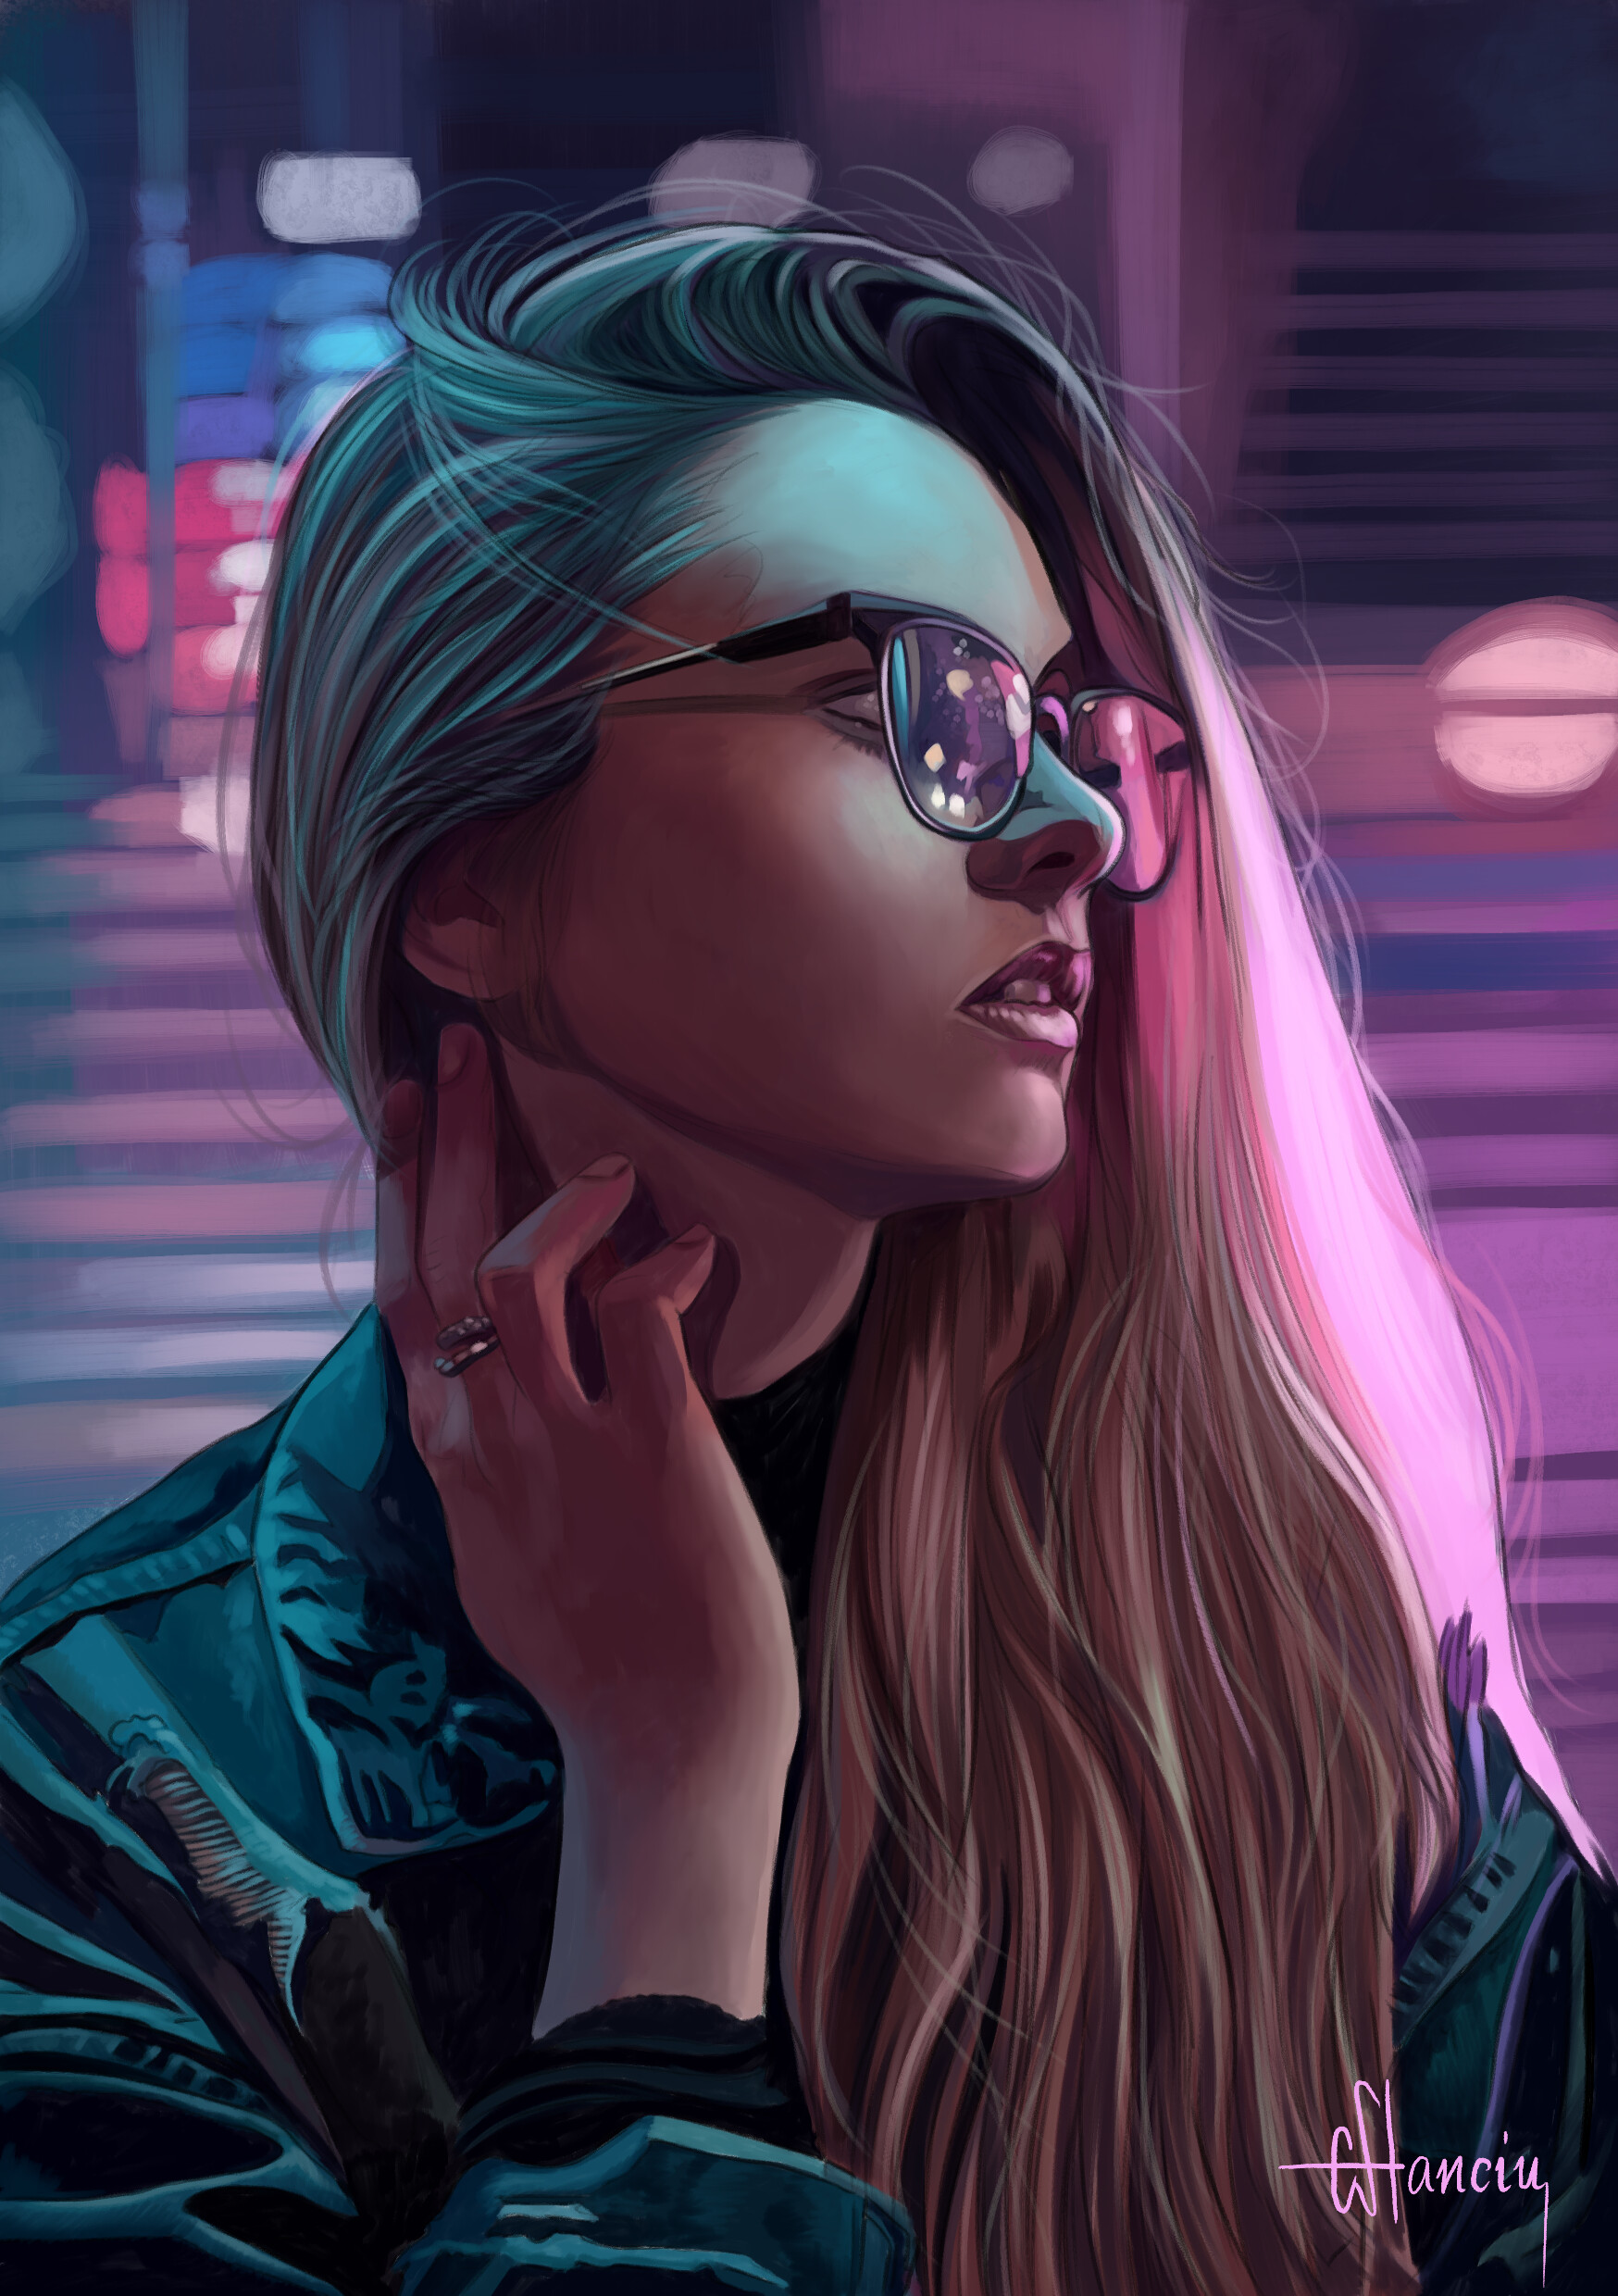 ArtStation - Girl with glasses